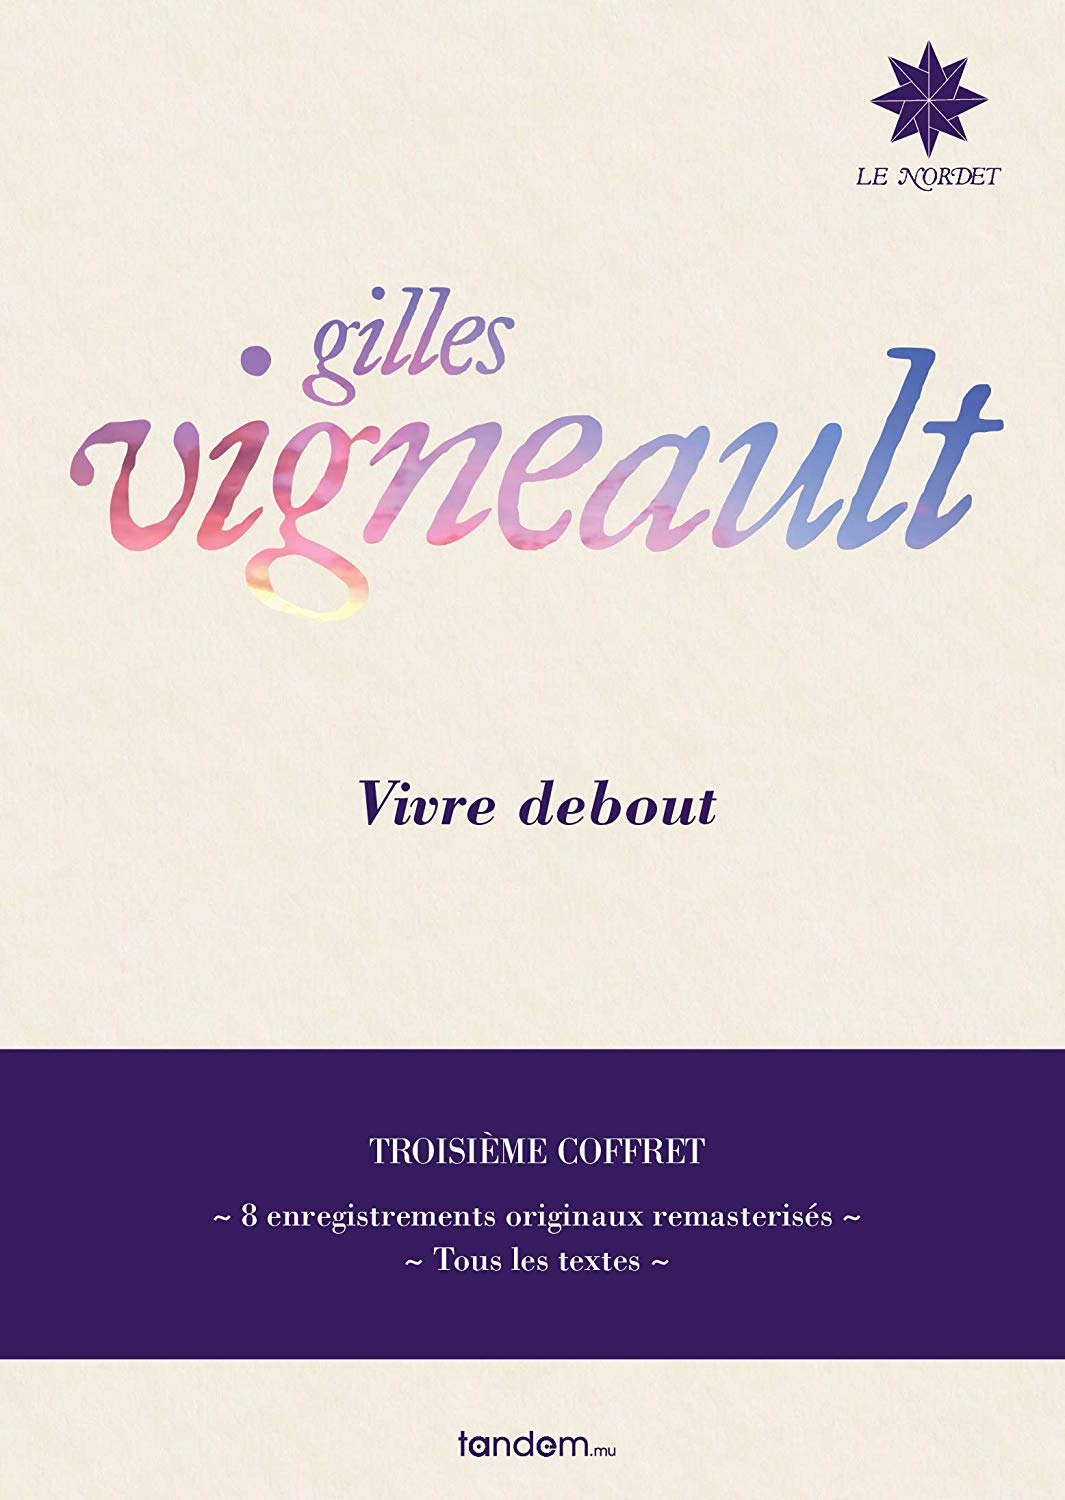 Audio Cd Gilles Vigneault - Vivre Debout: Troisieme Coffret (8 Cd) NUOVO SIGILLATO, EDIZIONE DEL 11/10/2019 SUBITO DISPONIBILE